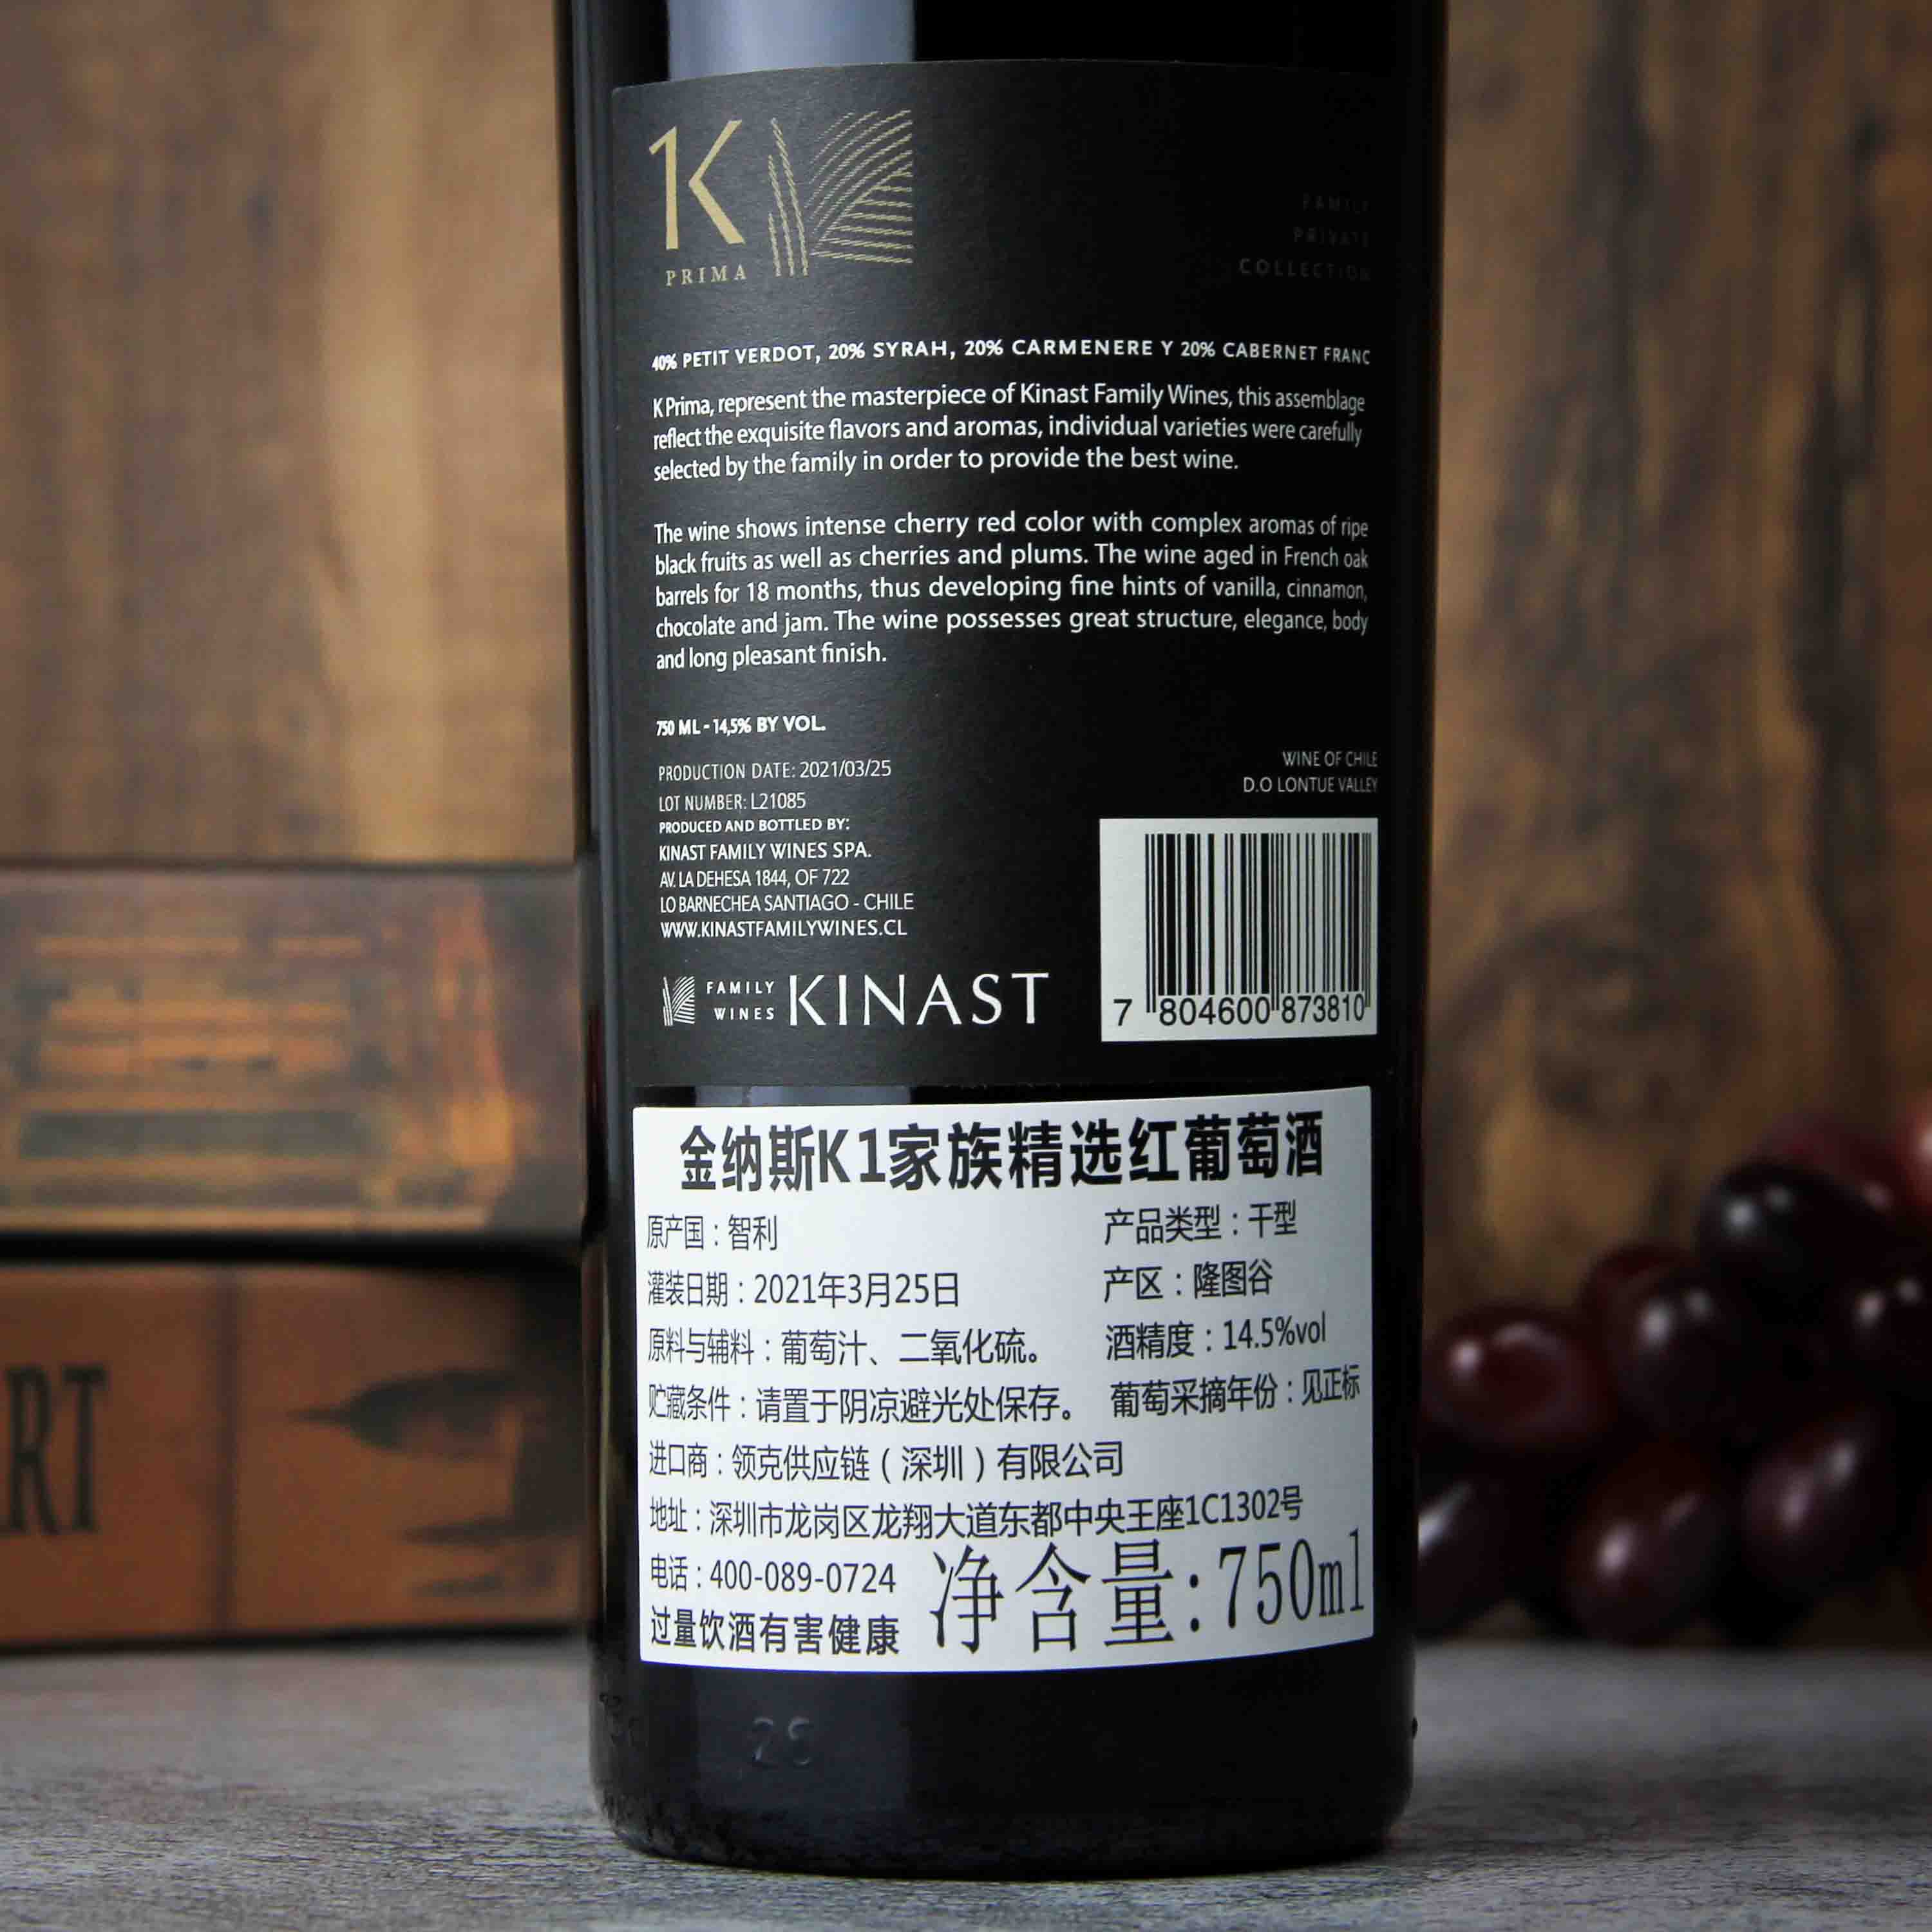 智利金纳斯家族酒庄隆图谷K1至尊限量干红葡萄酒